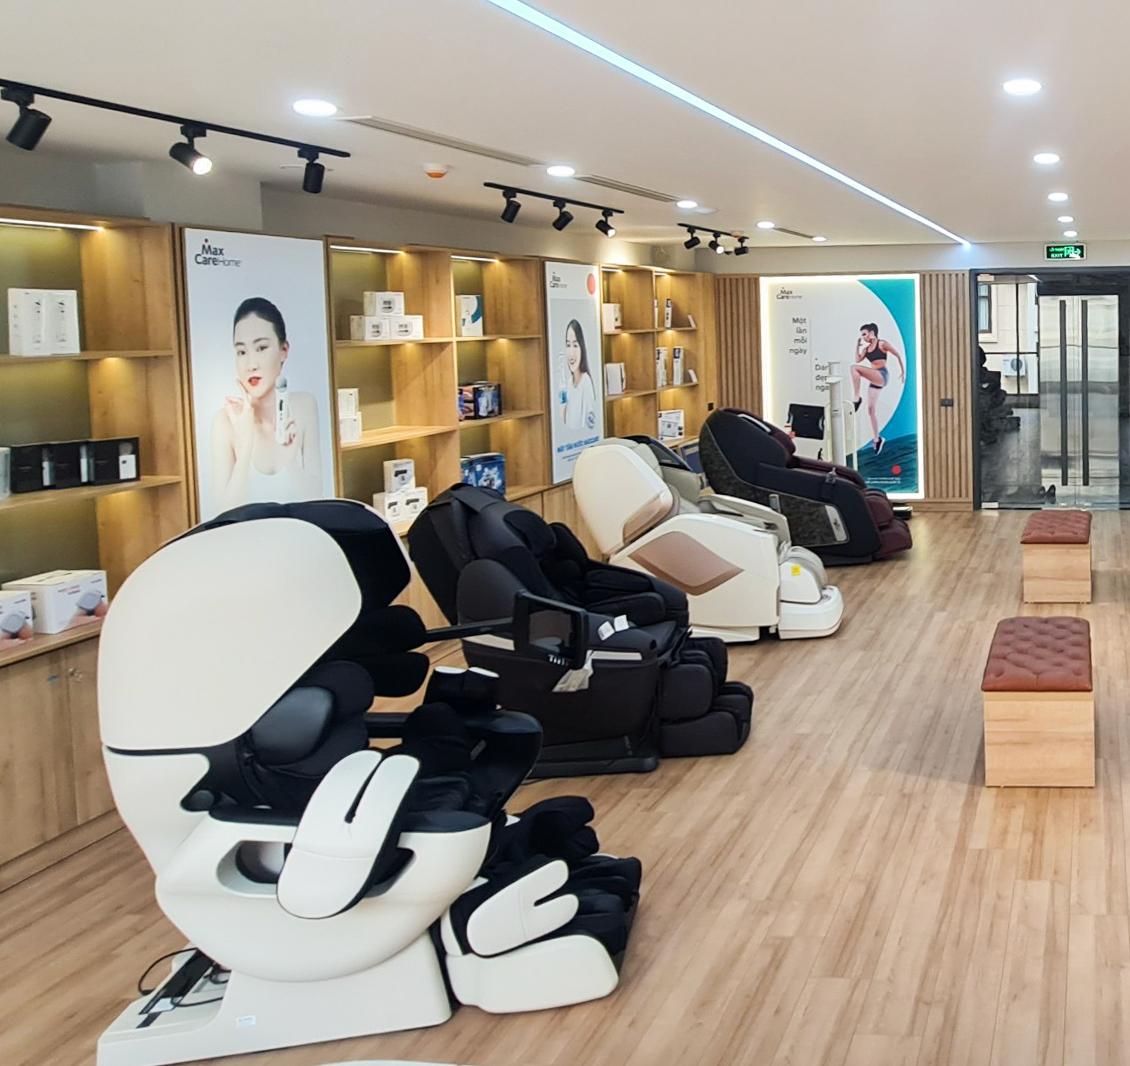 Maxcare Home - địa chỉ bán ghế massage Nhật Bản tại Hồ Chí Minh uy tín